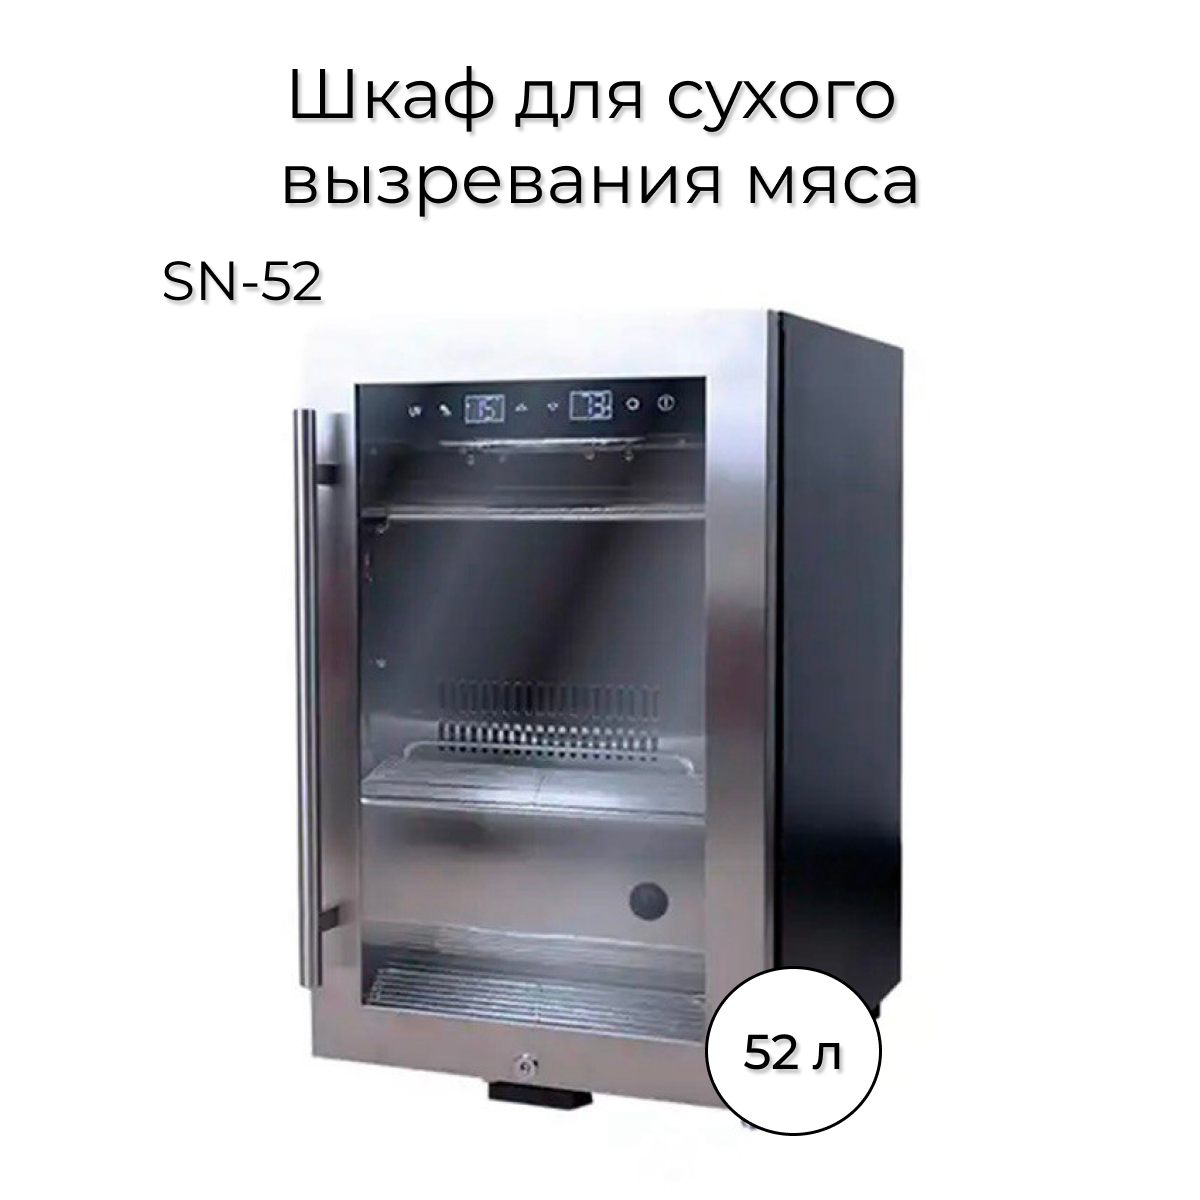 Холодильник Wistora SN-52 серебристый холодильник wistora sn 52 серебристый